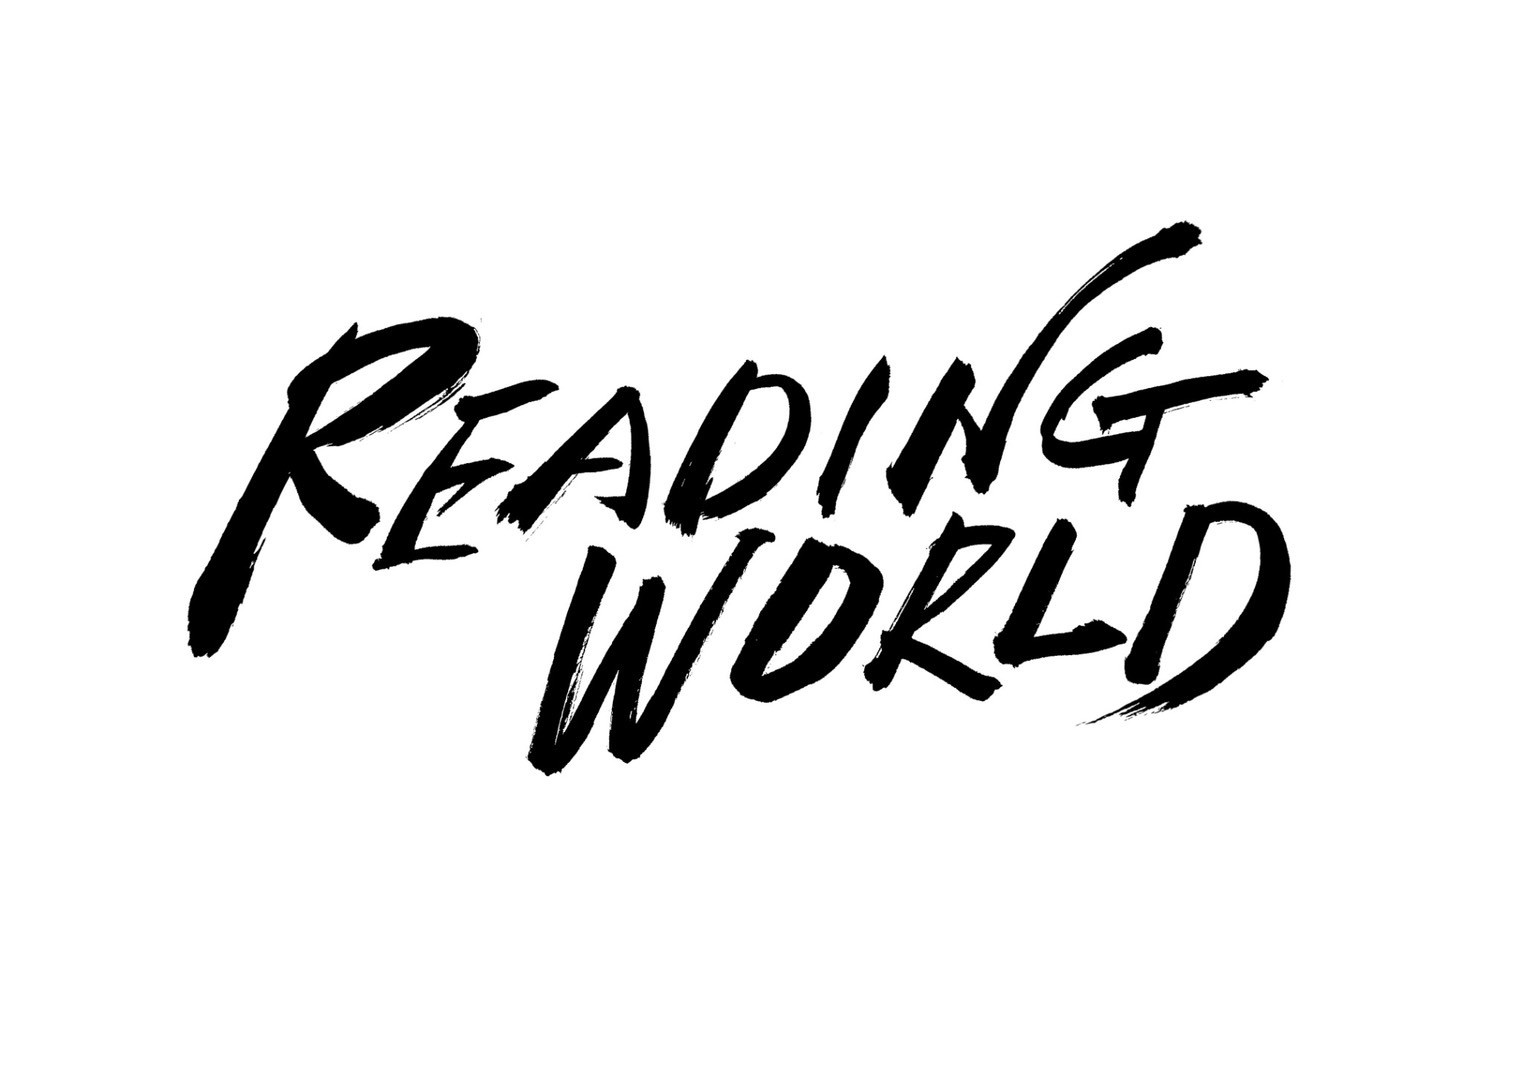 「朗読劇 READING WORLD ユネスコ世界記憶遺産 舞鶴への生還 『約束の果て』」